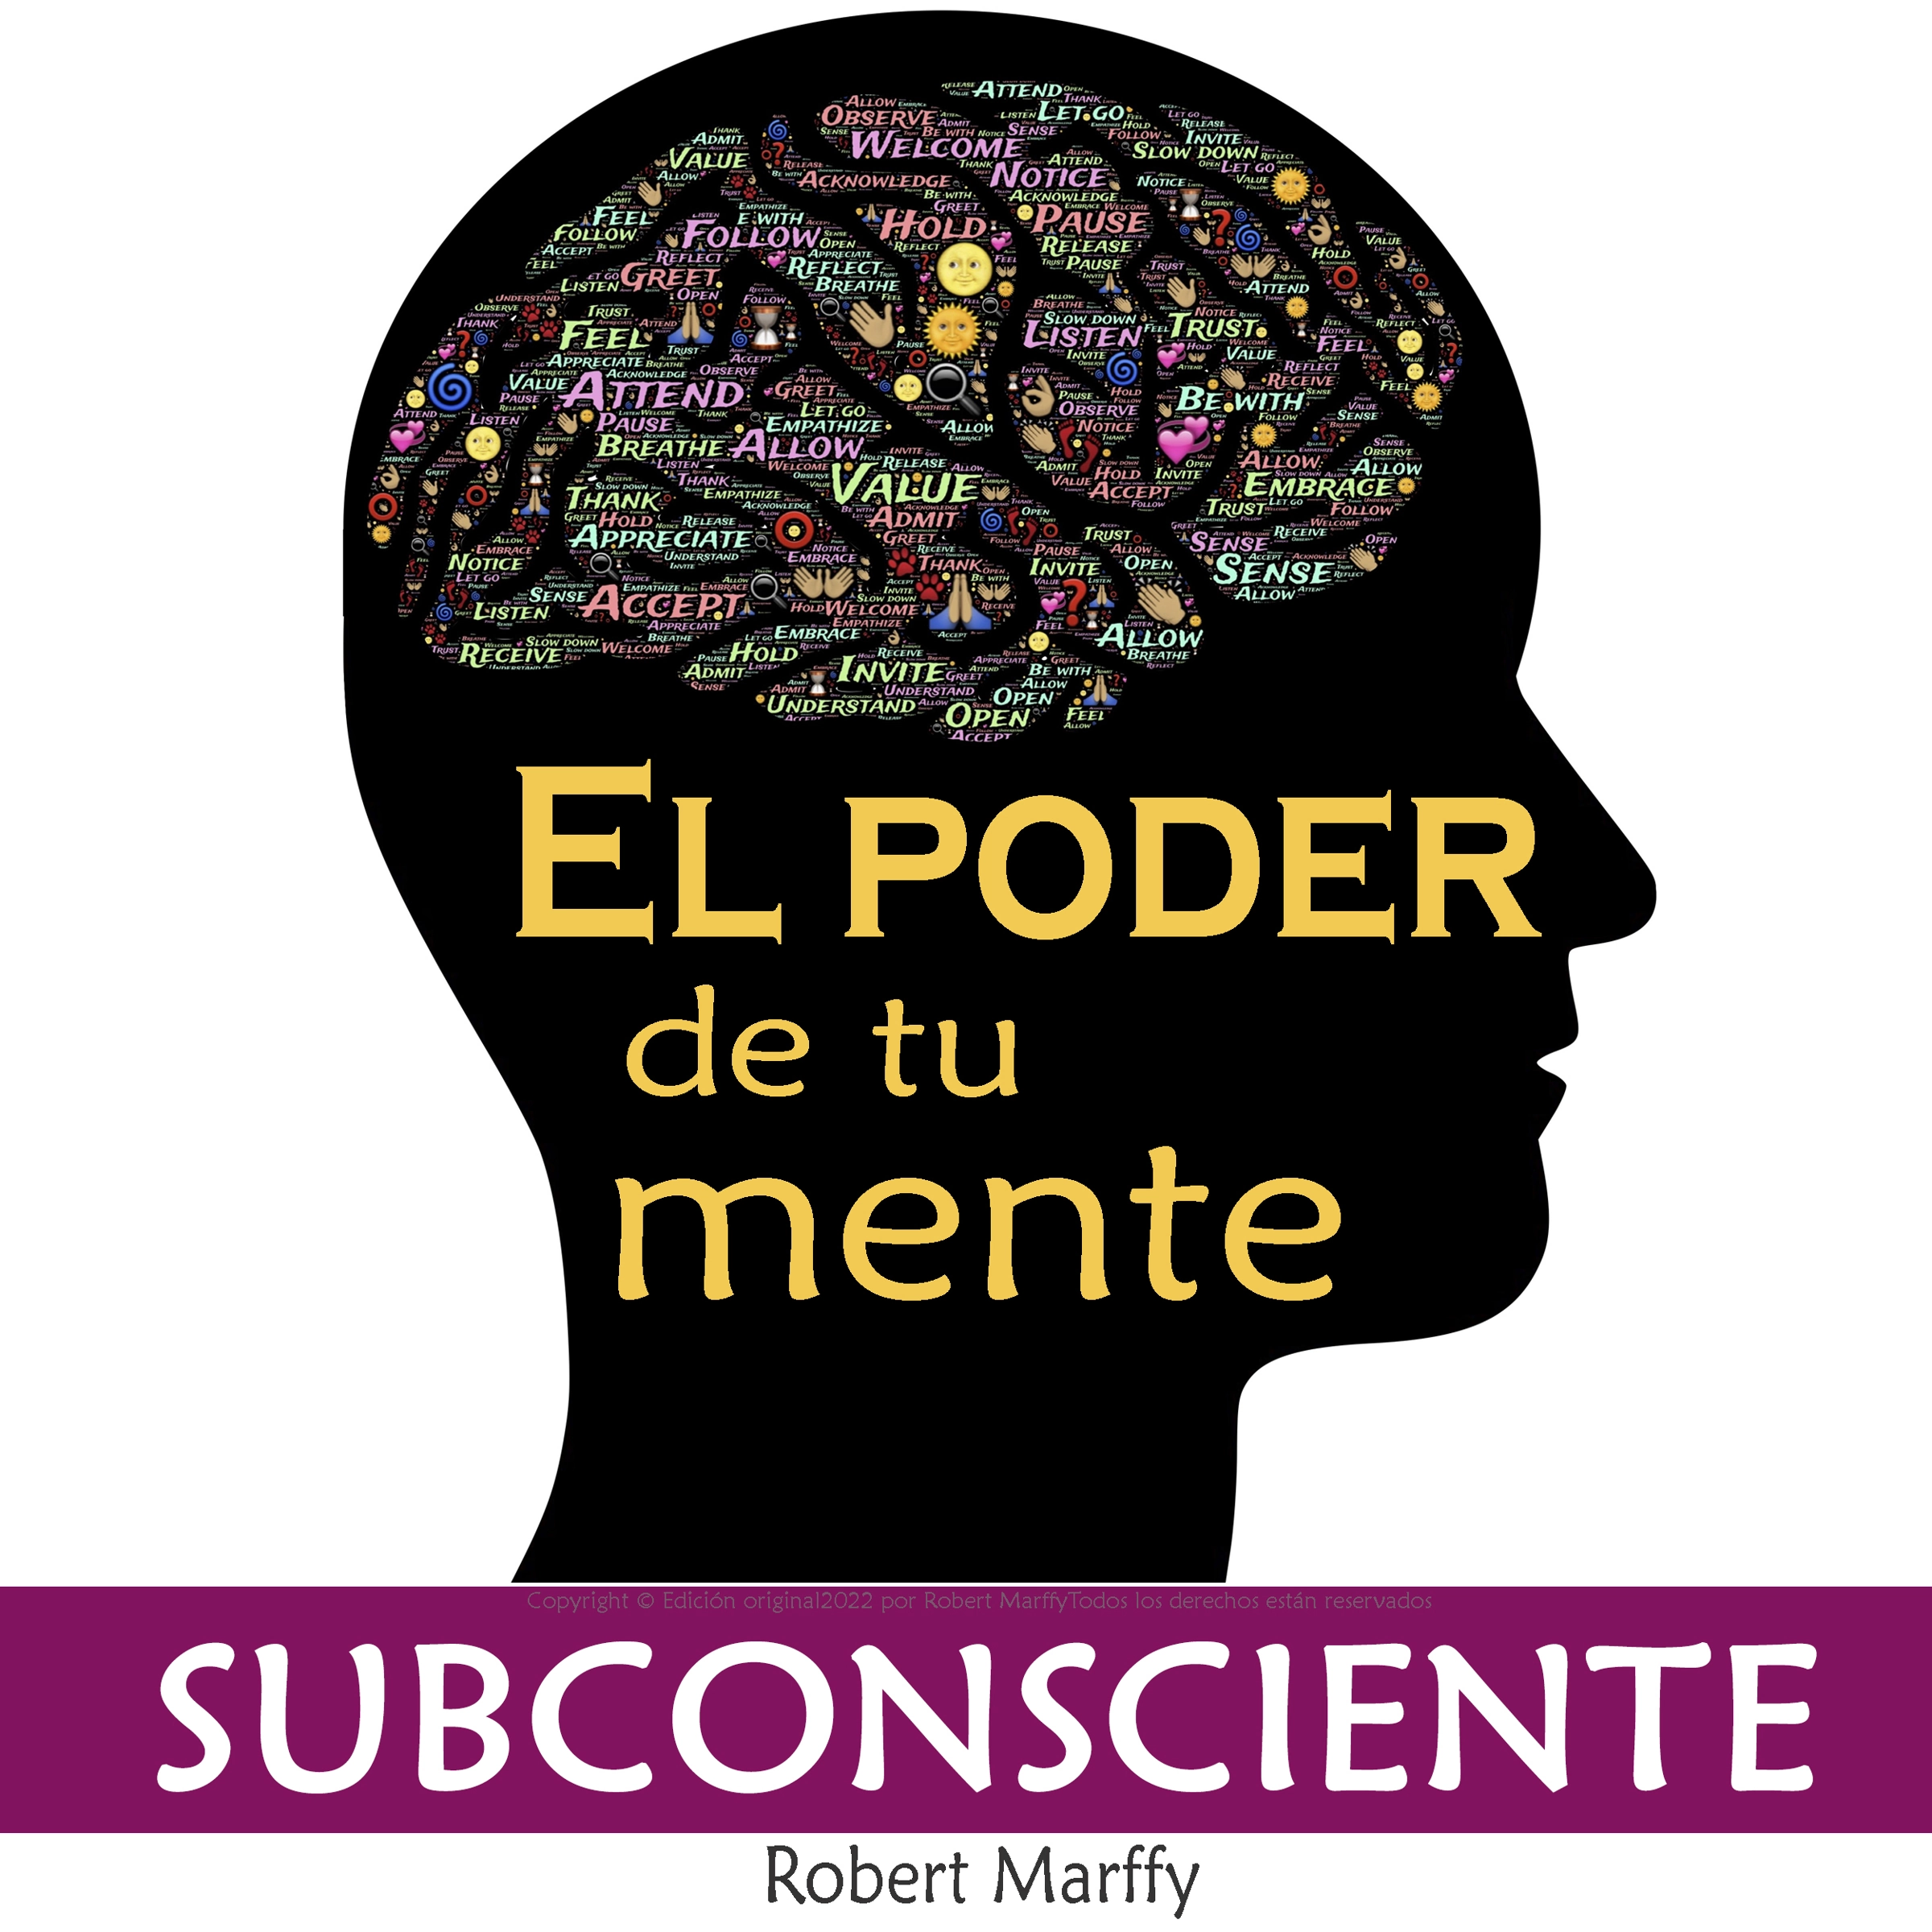 El Poder de la Mente Subconsciente Audiobook by Robert Marffy